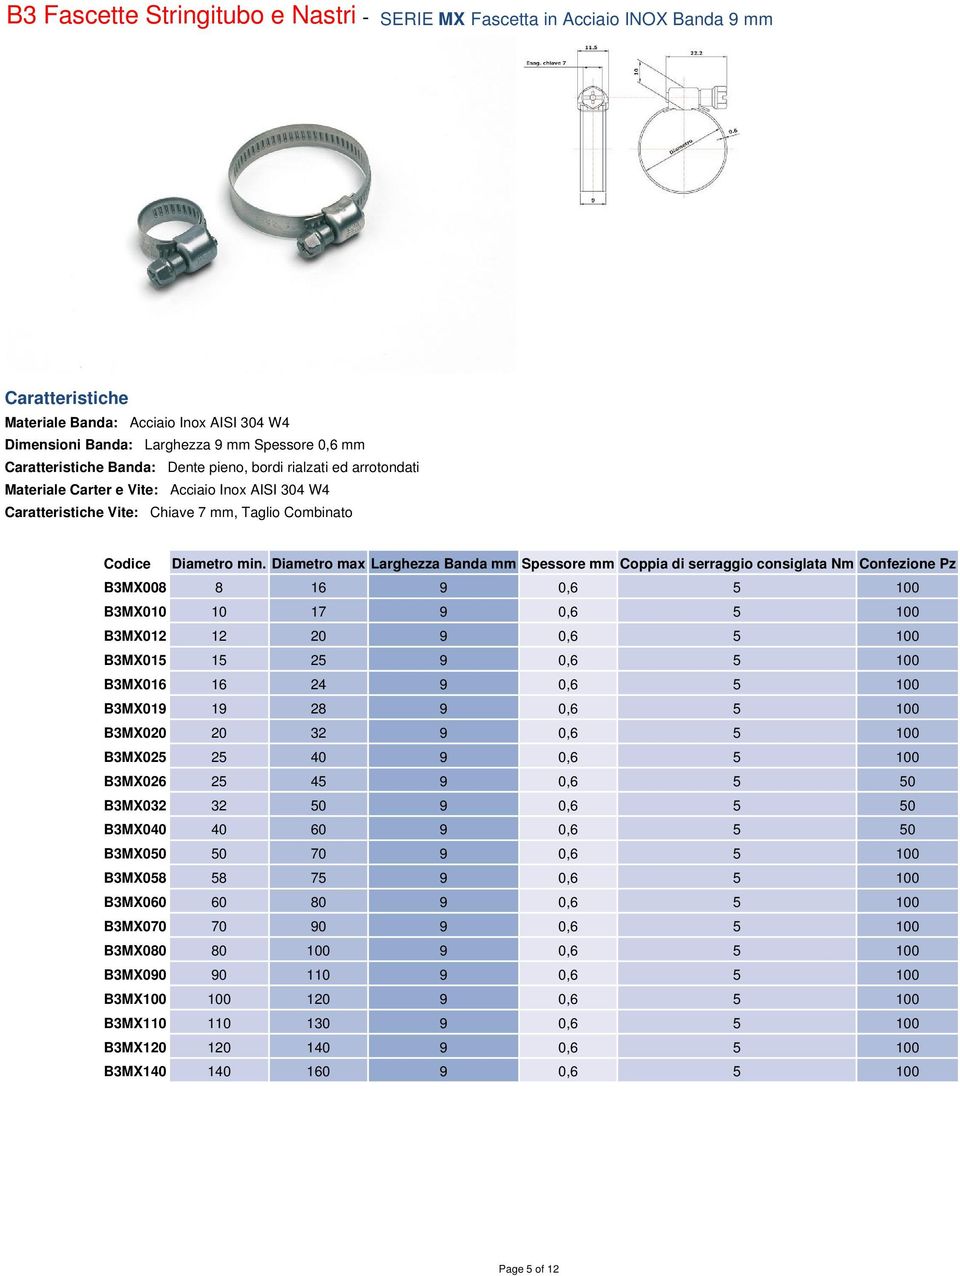 Diametro max Larghezza Banda mm Spessore mm Coppia di serraggio consiglata Nm Confezione Pz B3MX008 8 16 9 0,6 5 100 B3MX010 10 17 9 0,6 5 100 B3MX012 12 20 9 0,6 5 100 B3MX015 15 25 9 0,6 5 100